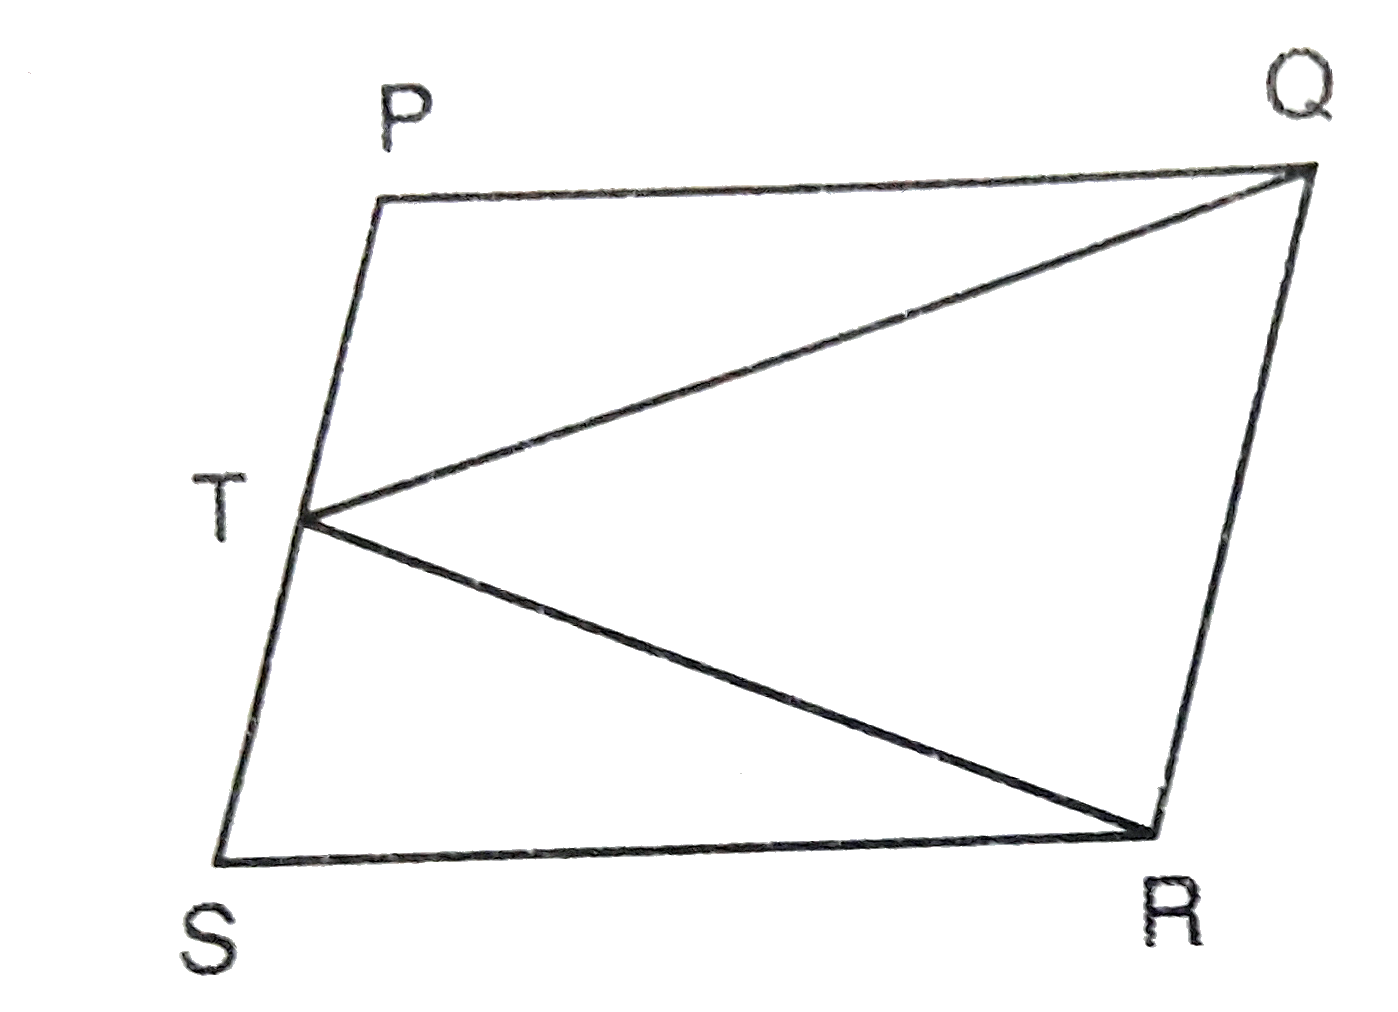 आकृति में आकृति एक ही आधार तथा समान समांतर रेखाओं के बीच स्थित है :